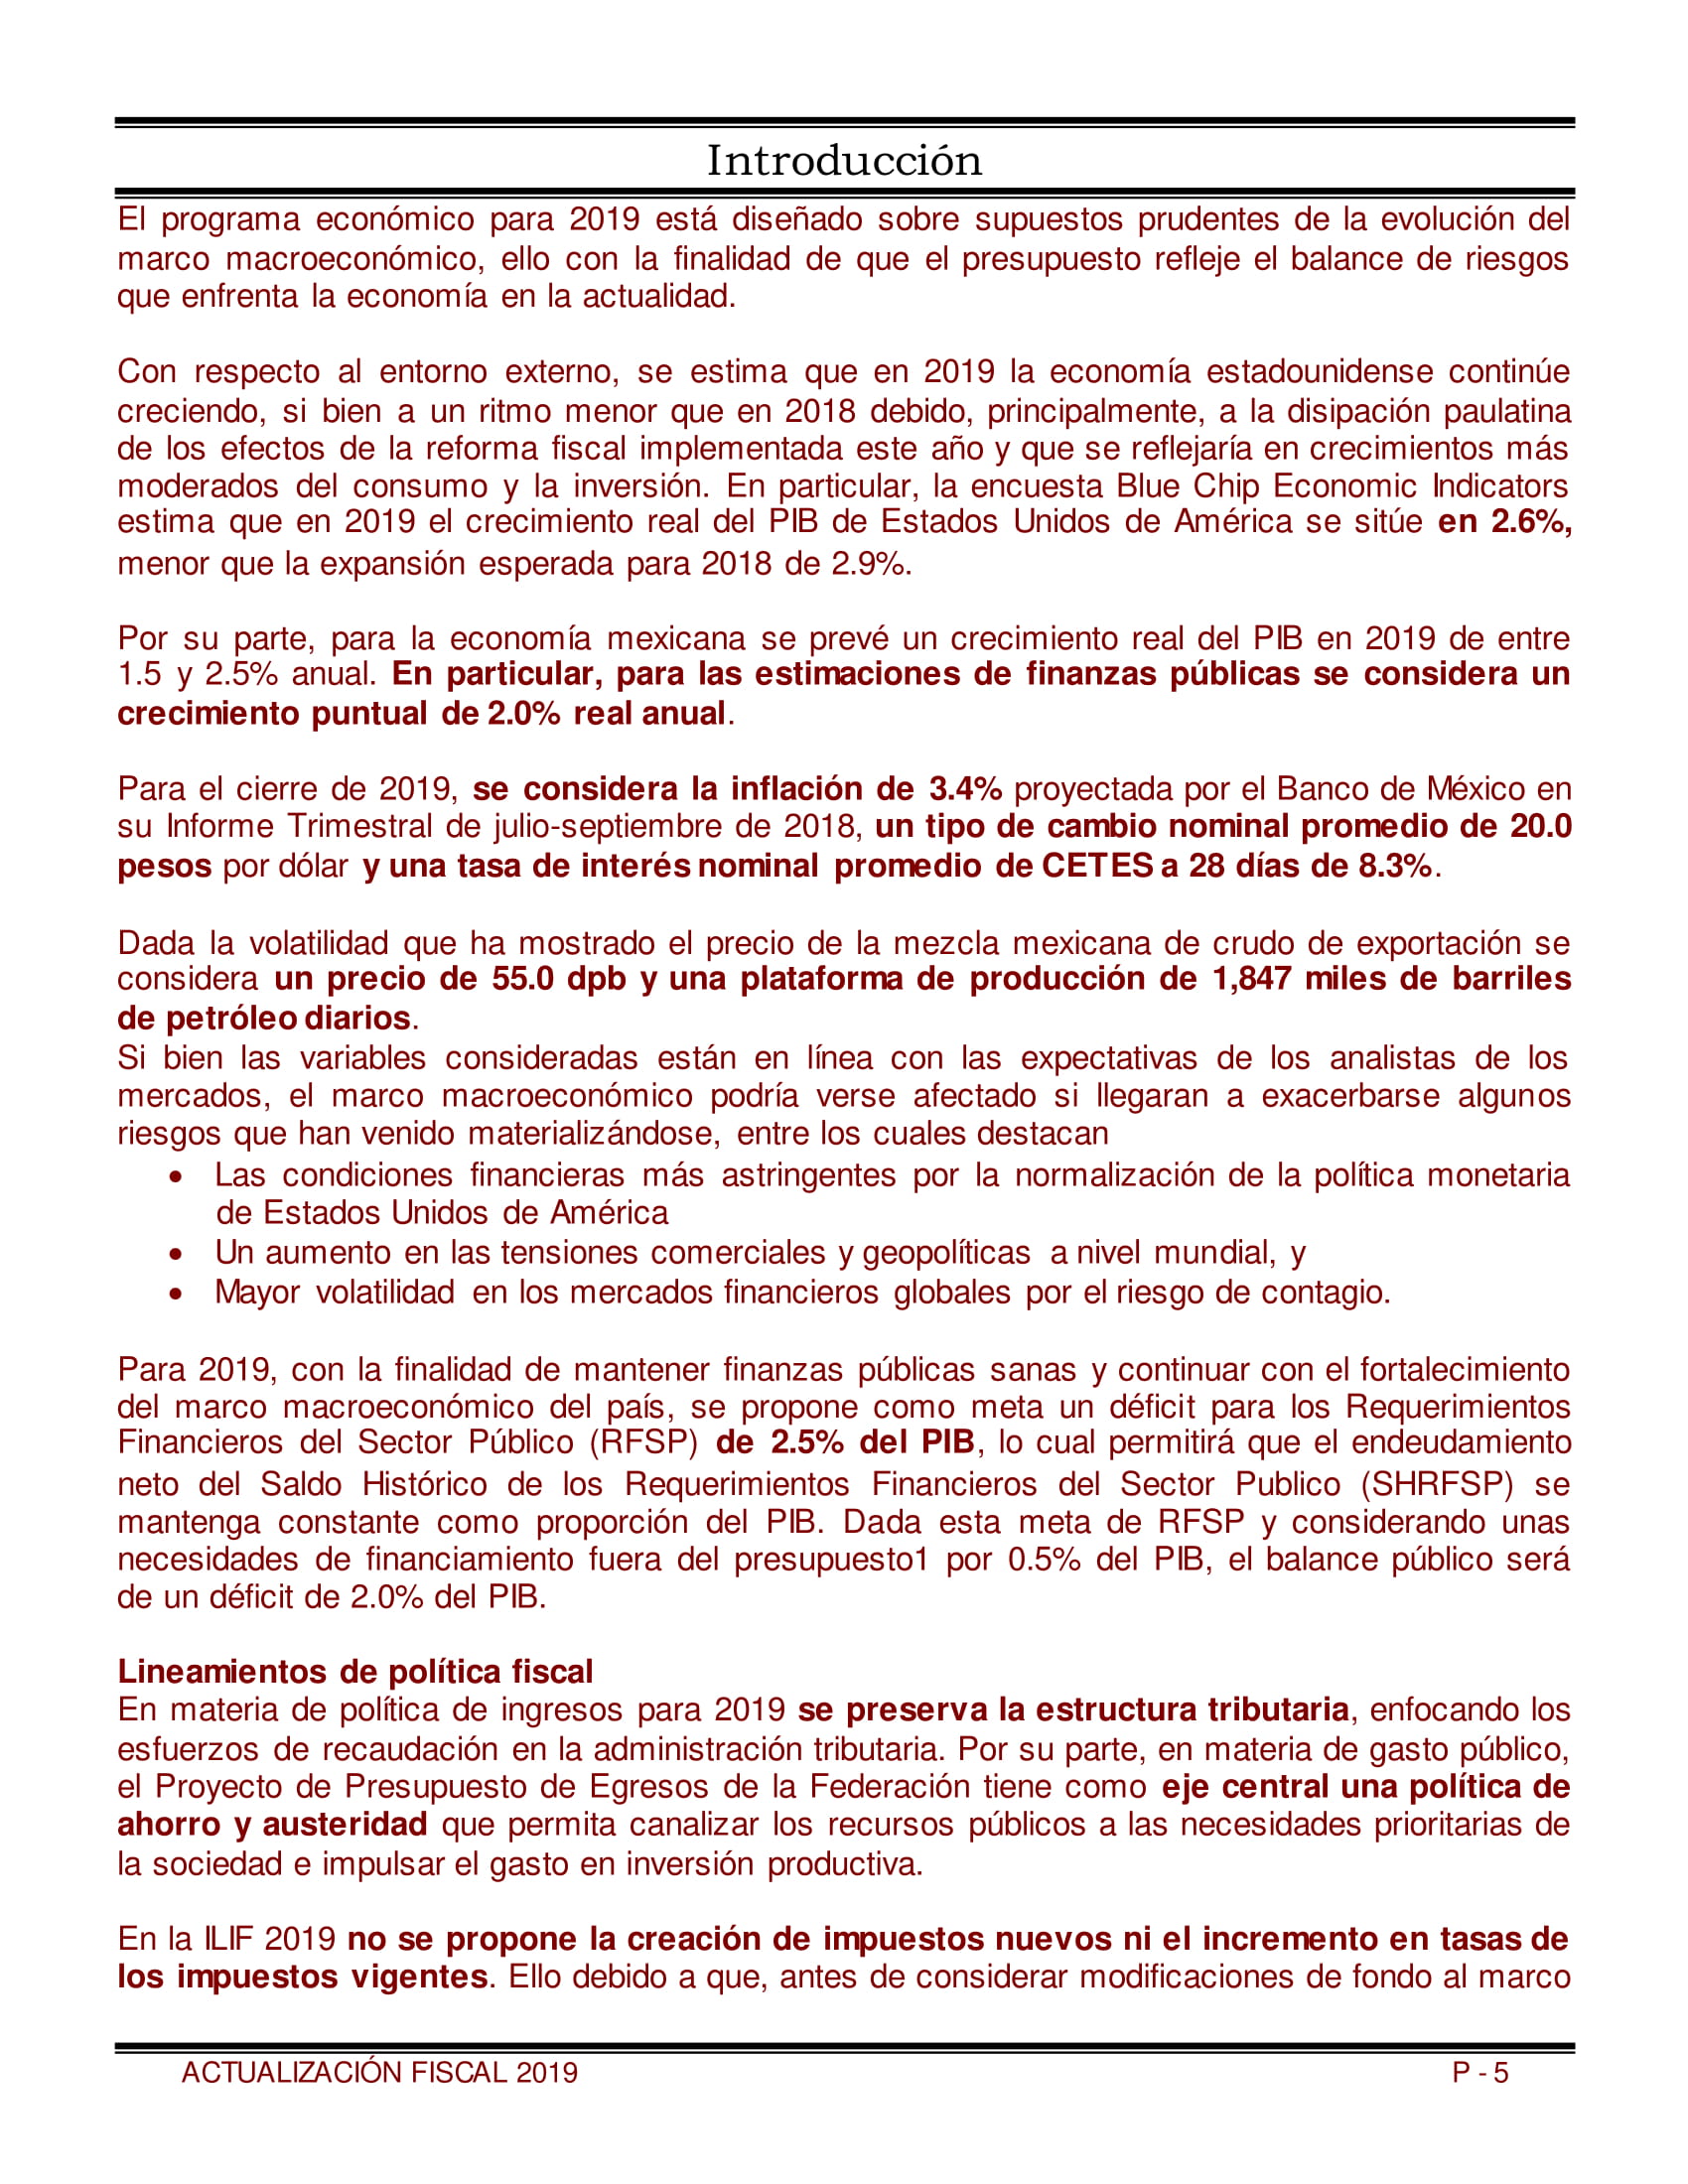 Libro_Actualizacion_Fiscal_2019-05